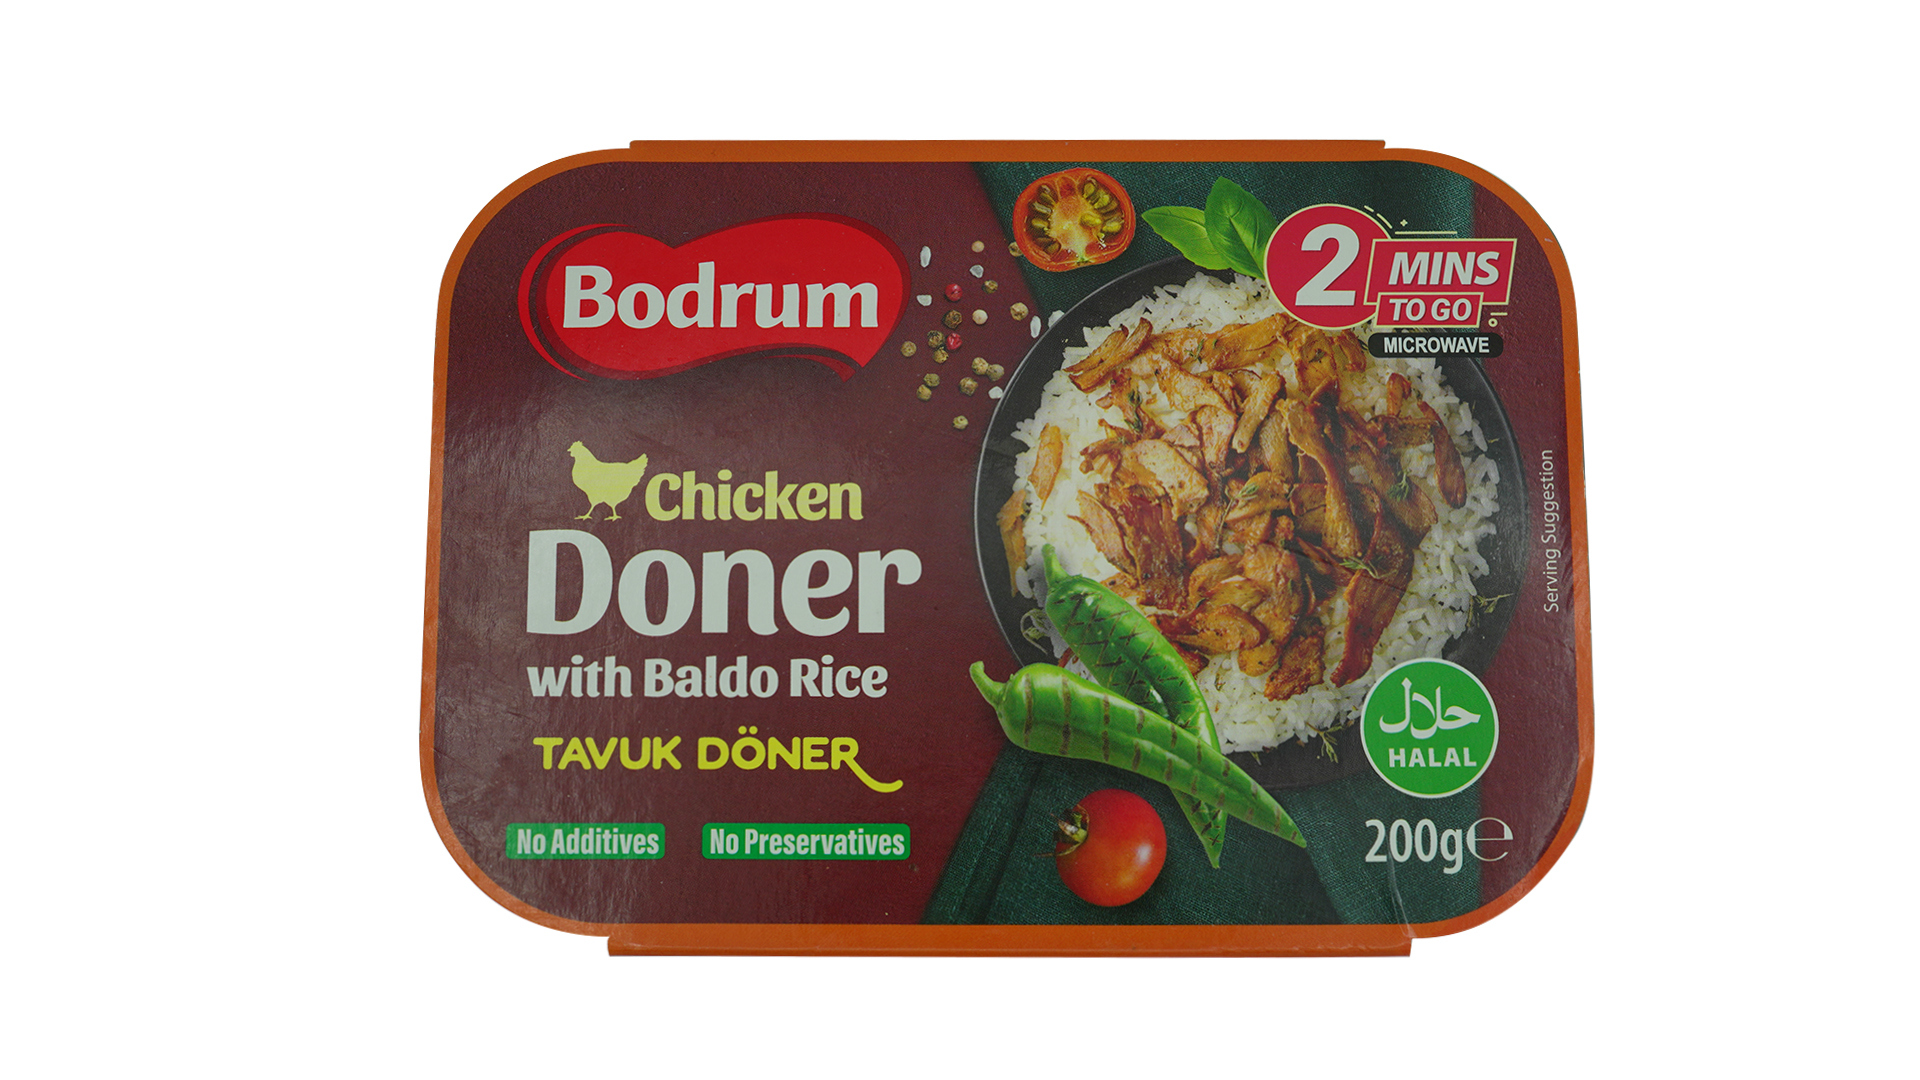 Bodrum chicken doner with baldo rice 200g 1